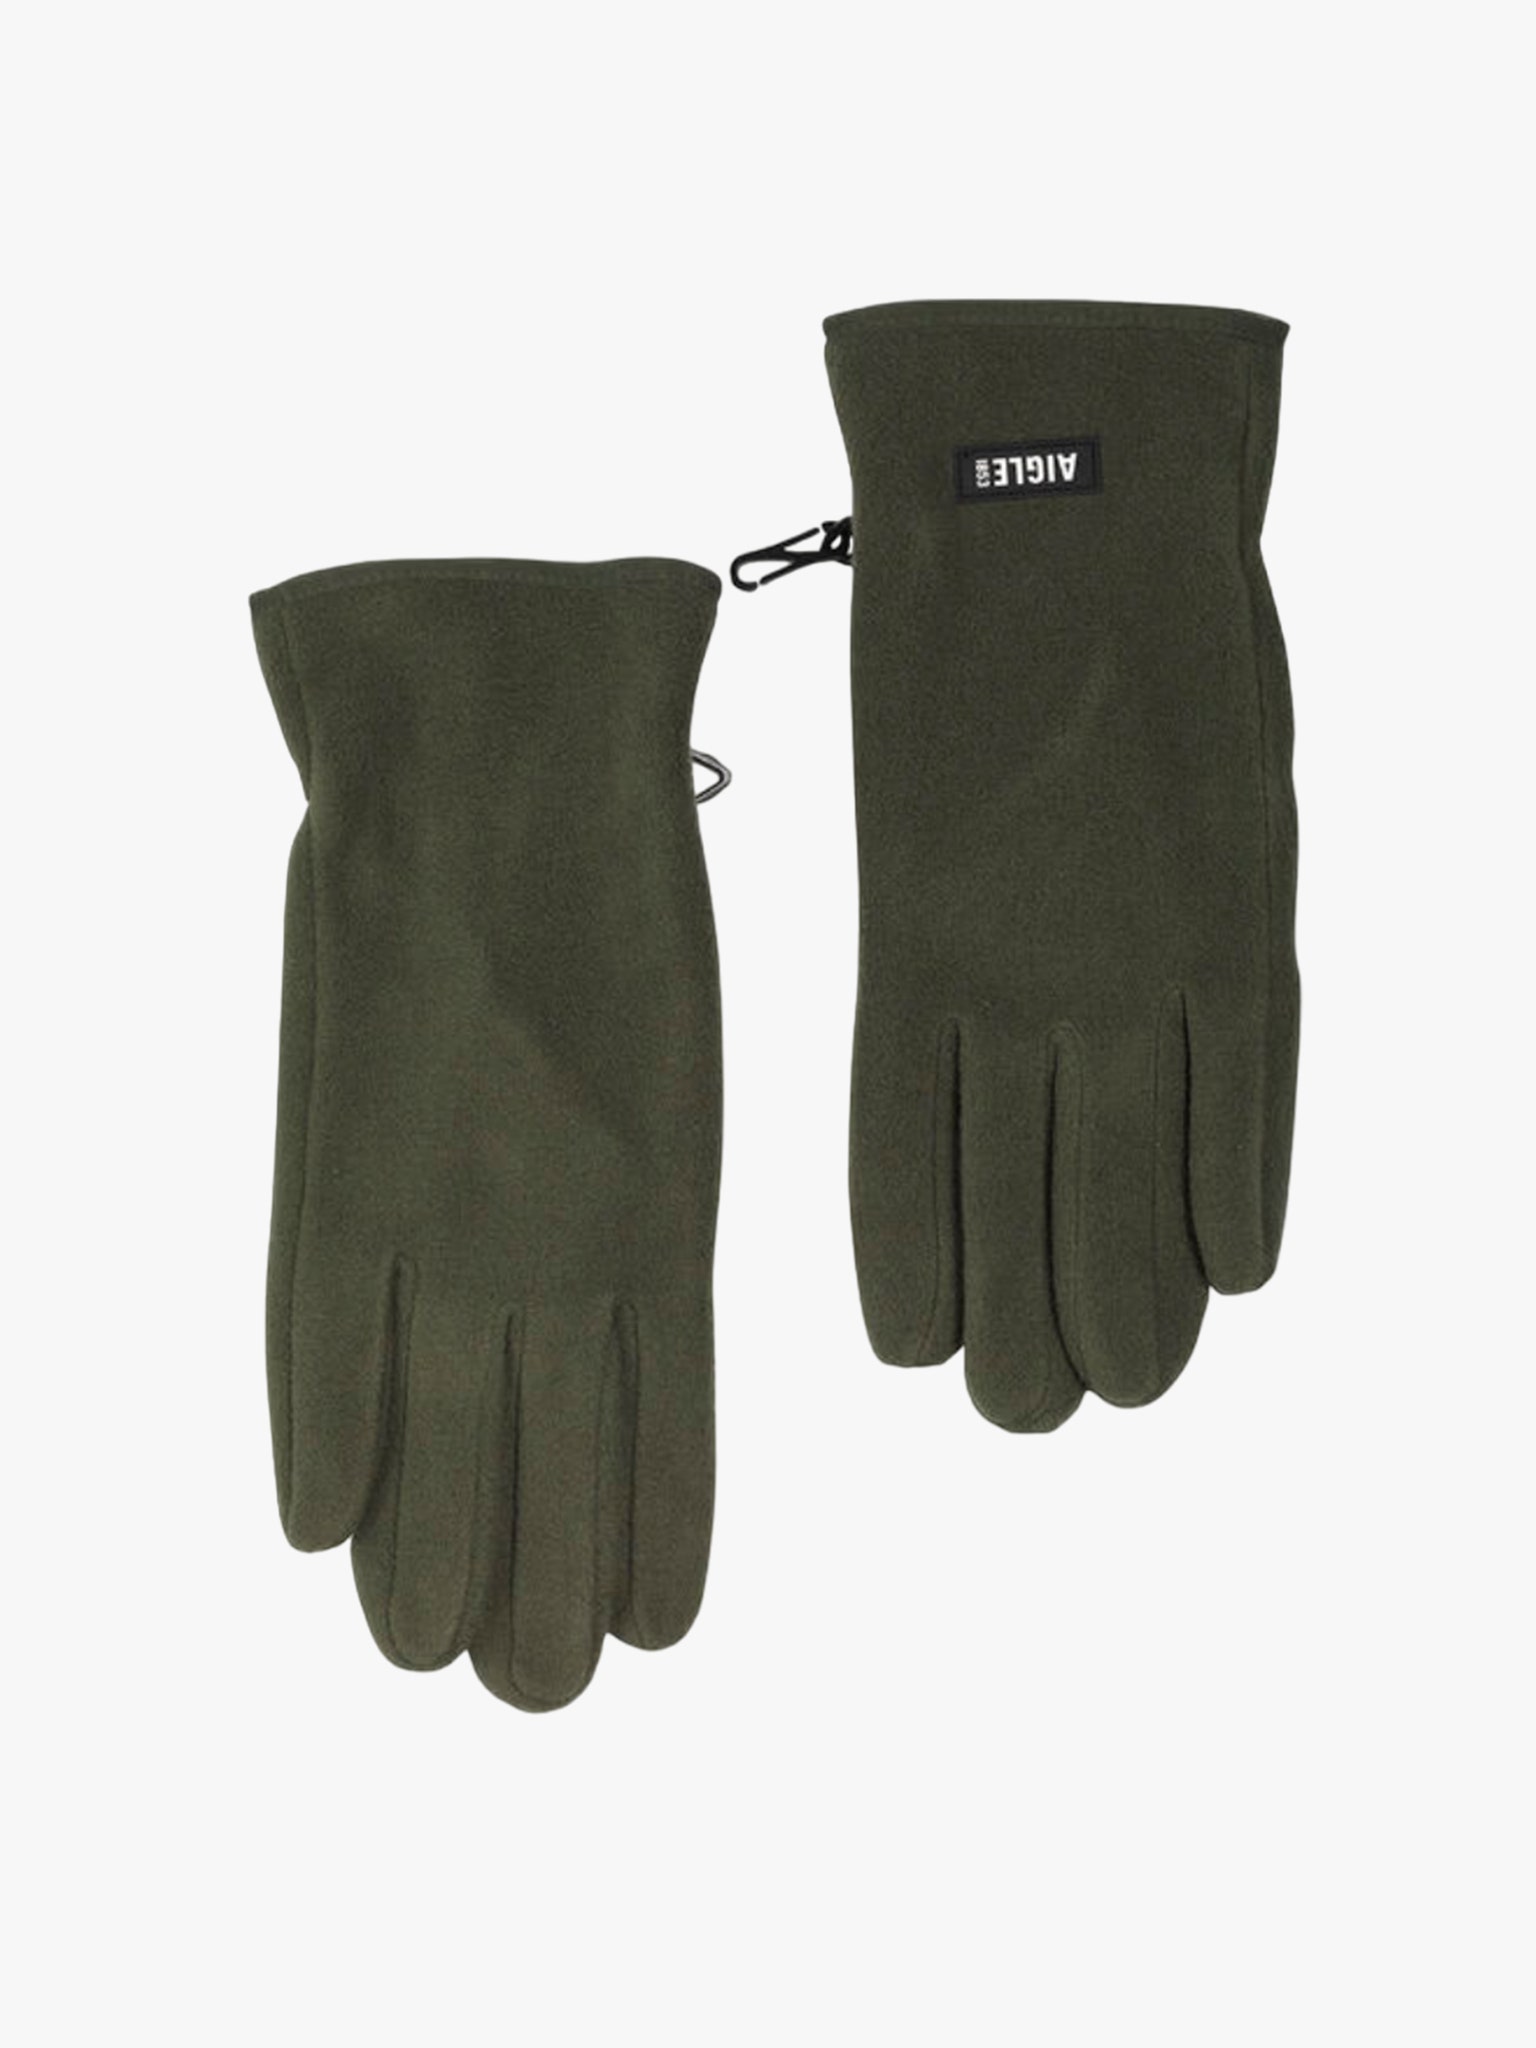 les paires de gants pour homme à porter cet hiver aussi bien en ville qu’à la montagne